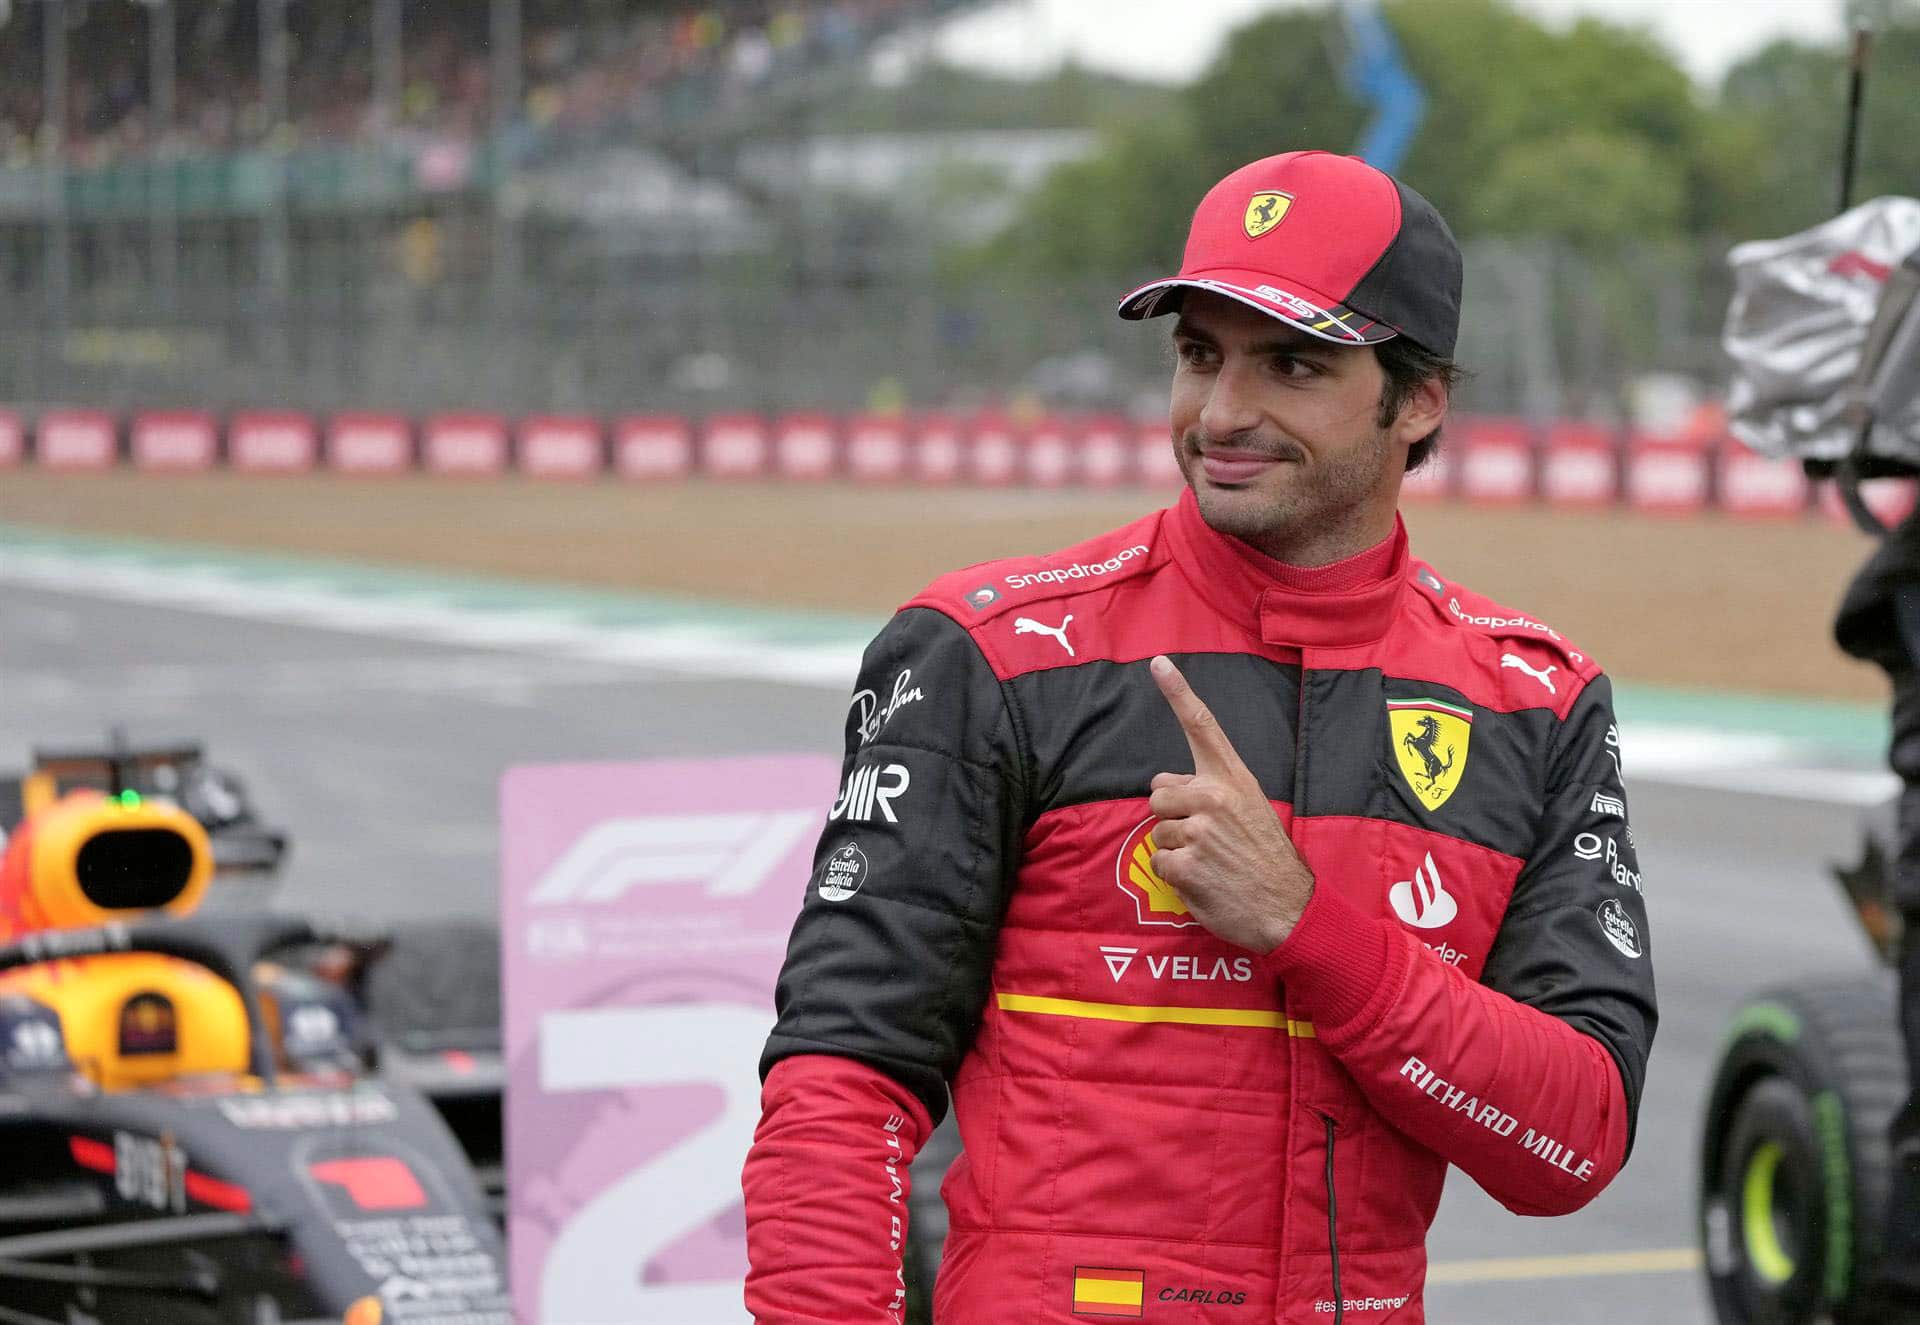 El piloto español de Ferrari, Carlos Sainz, conquistó la primera pole position de su carrera. Foto: Agencia EFE